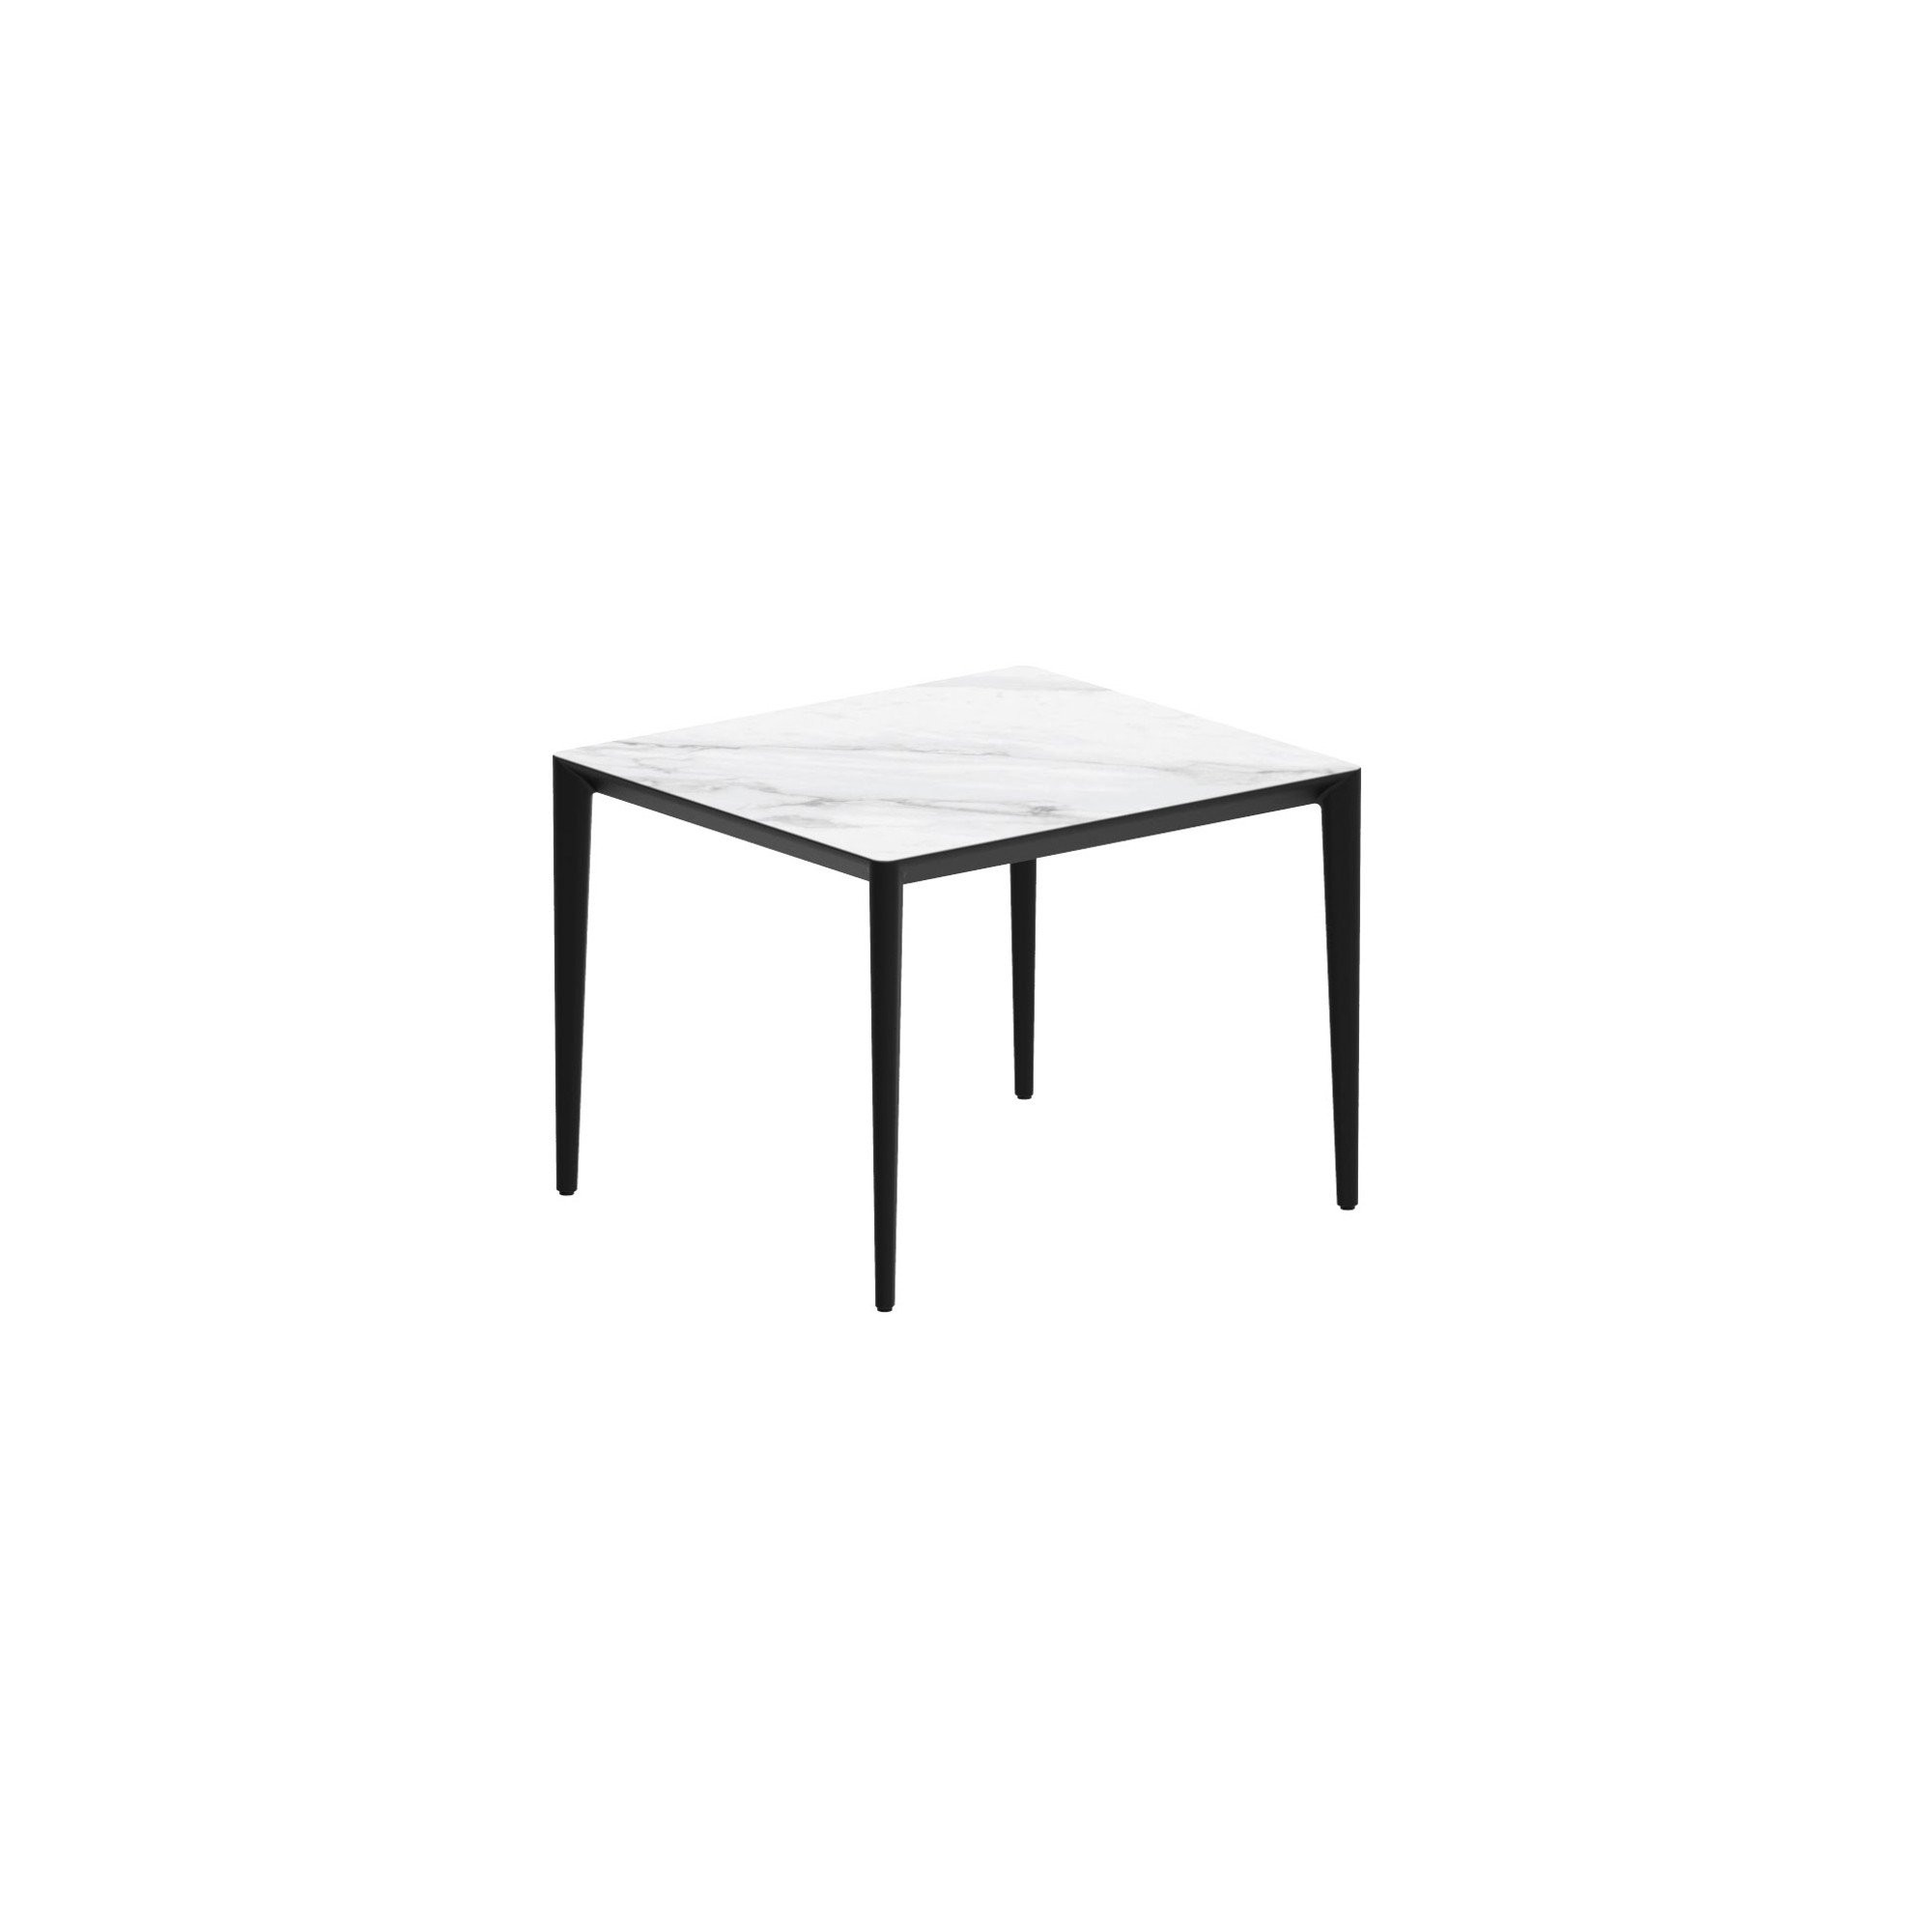 U-NITE | Fixed Tables | Tables | ROYAL BOTANIA - Masonionline